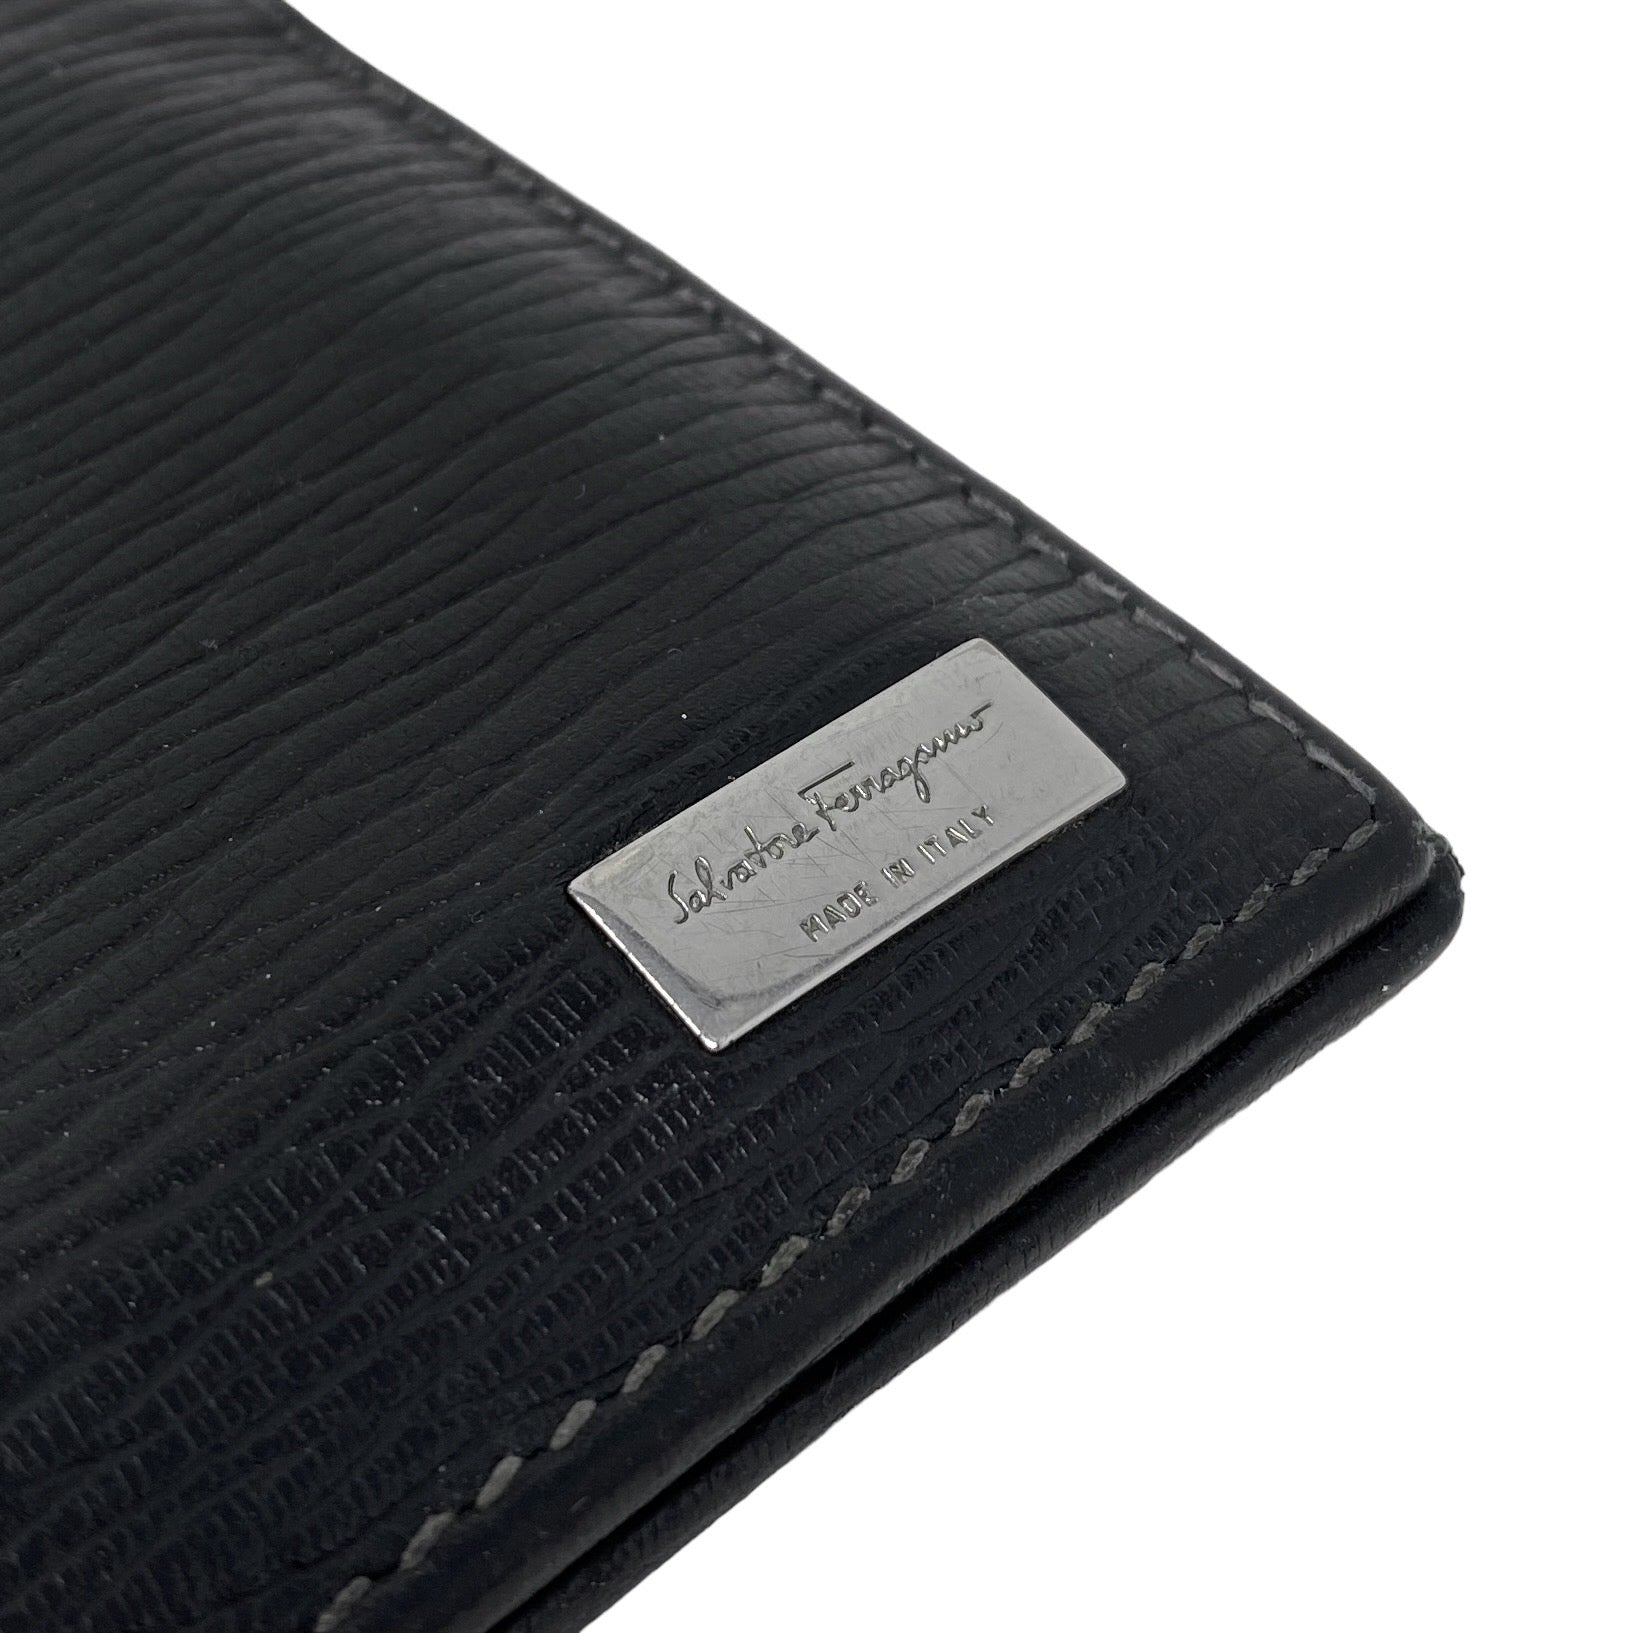 Ferragamo Black Bi-Fold Wallet